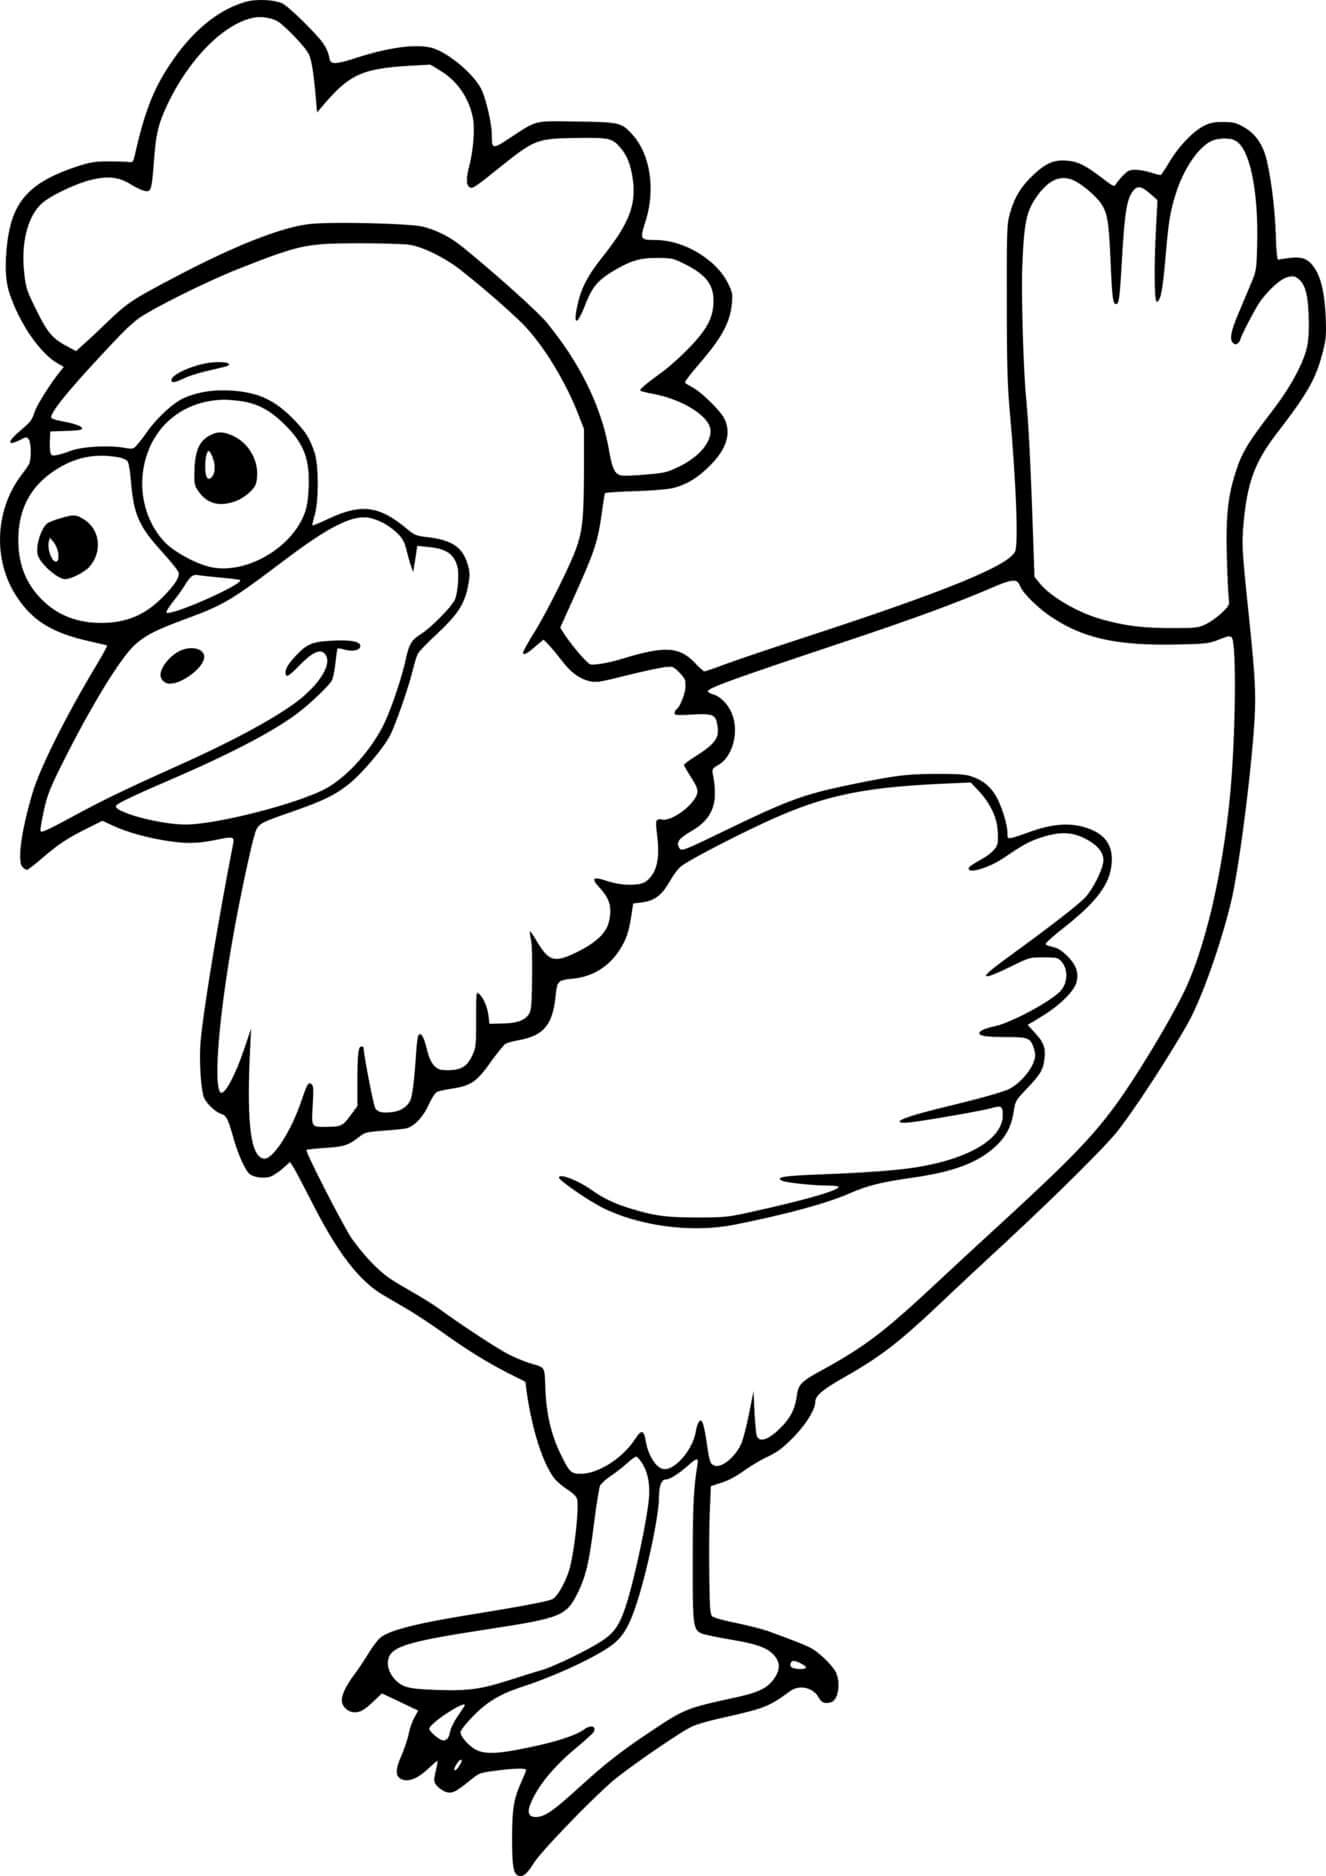 Funny Cartoon Chicken Coloring Page